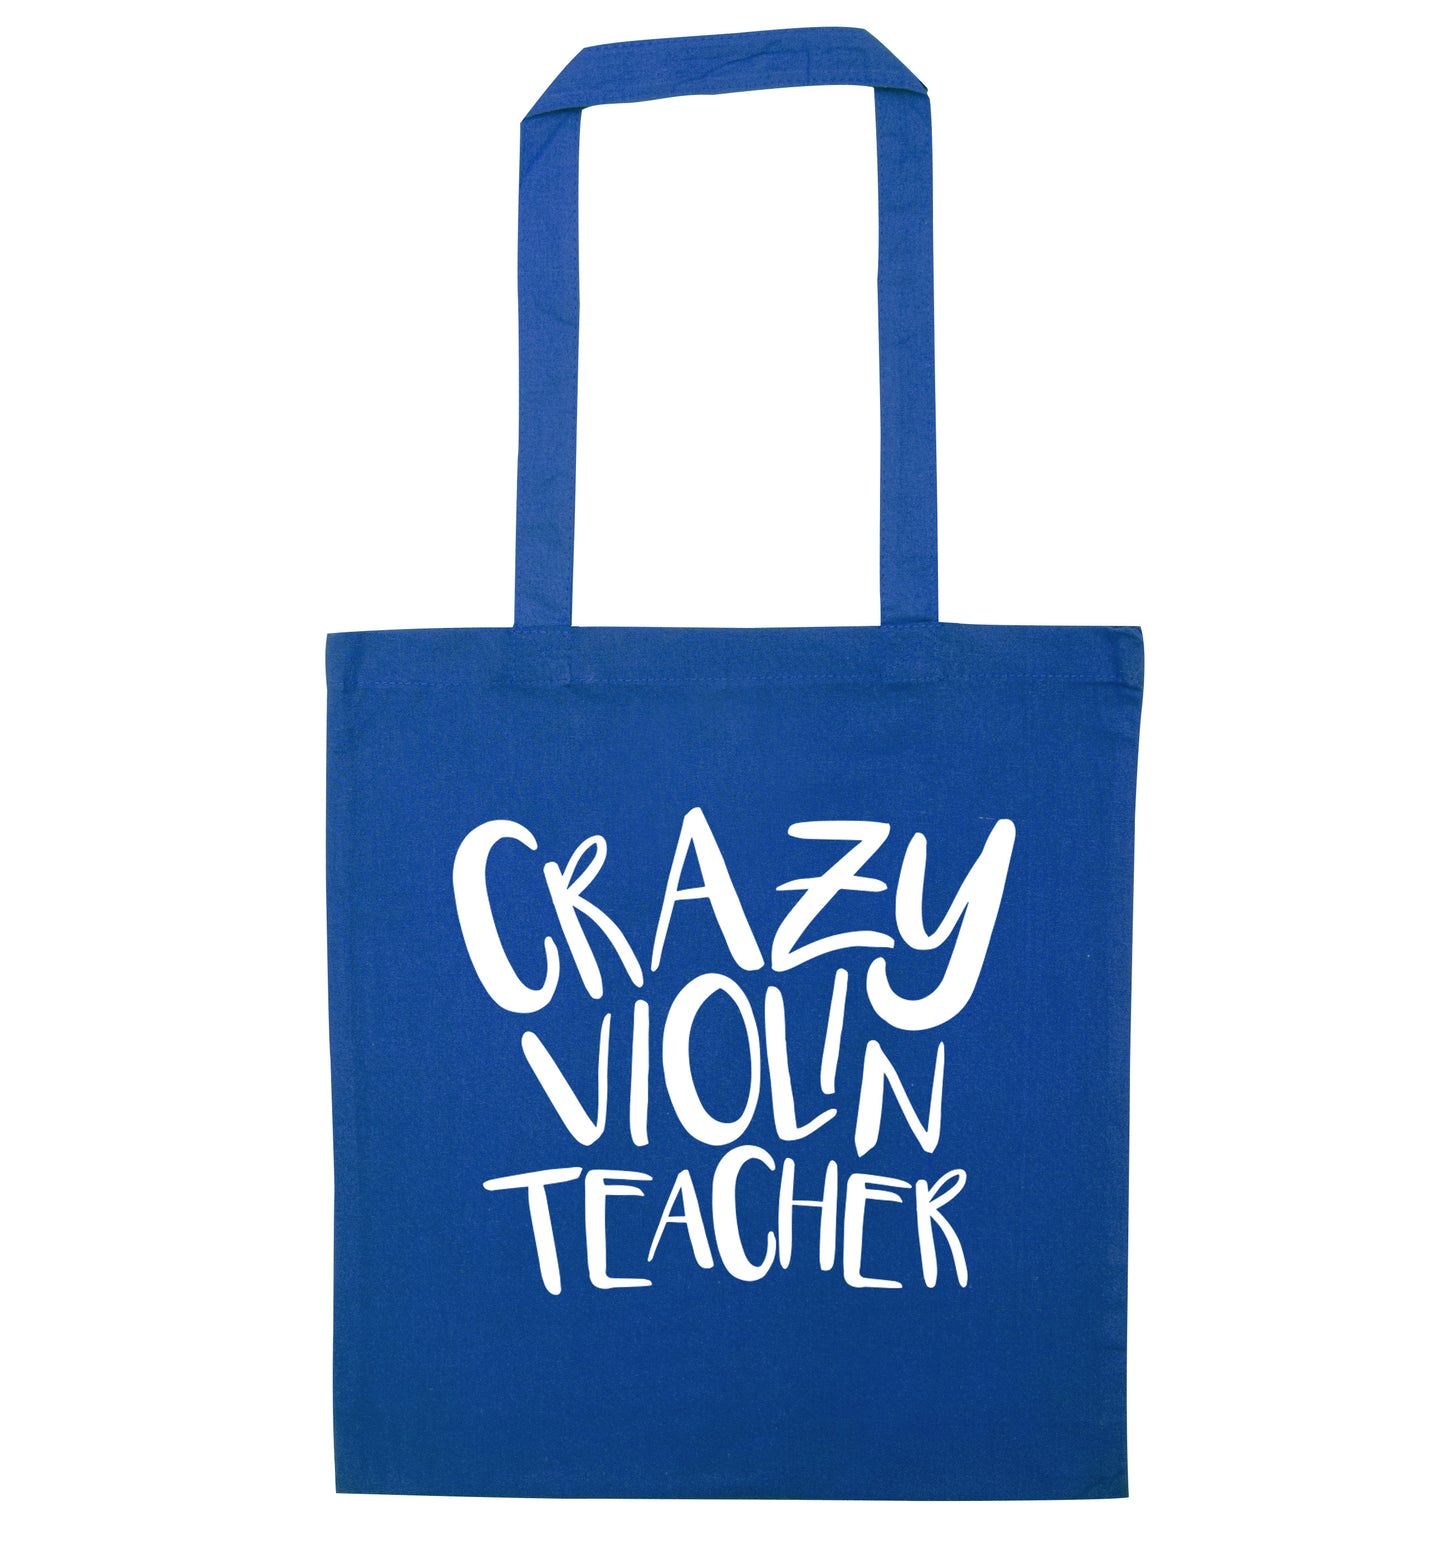 Crazy violin teacher blue tote bag